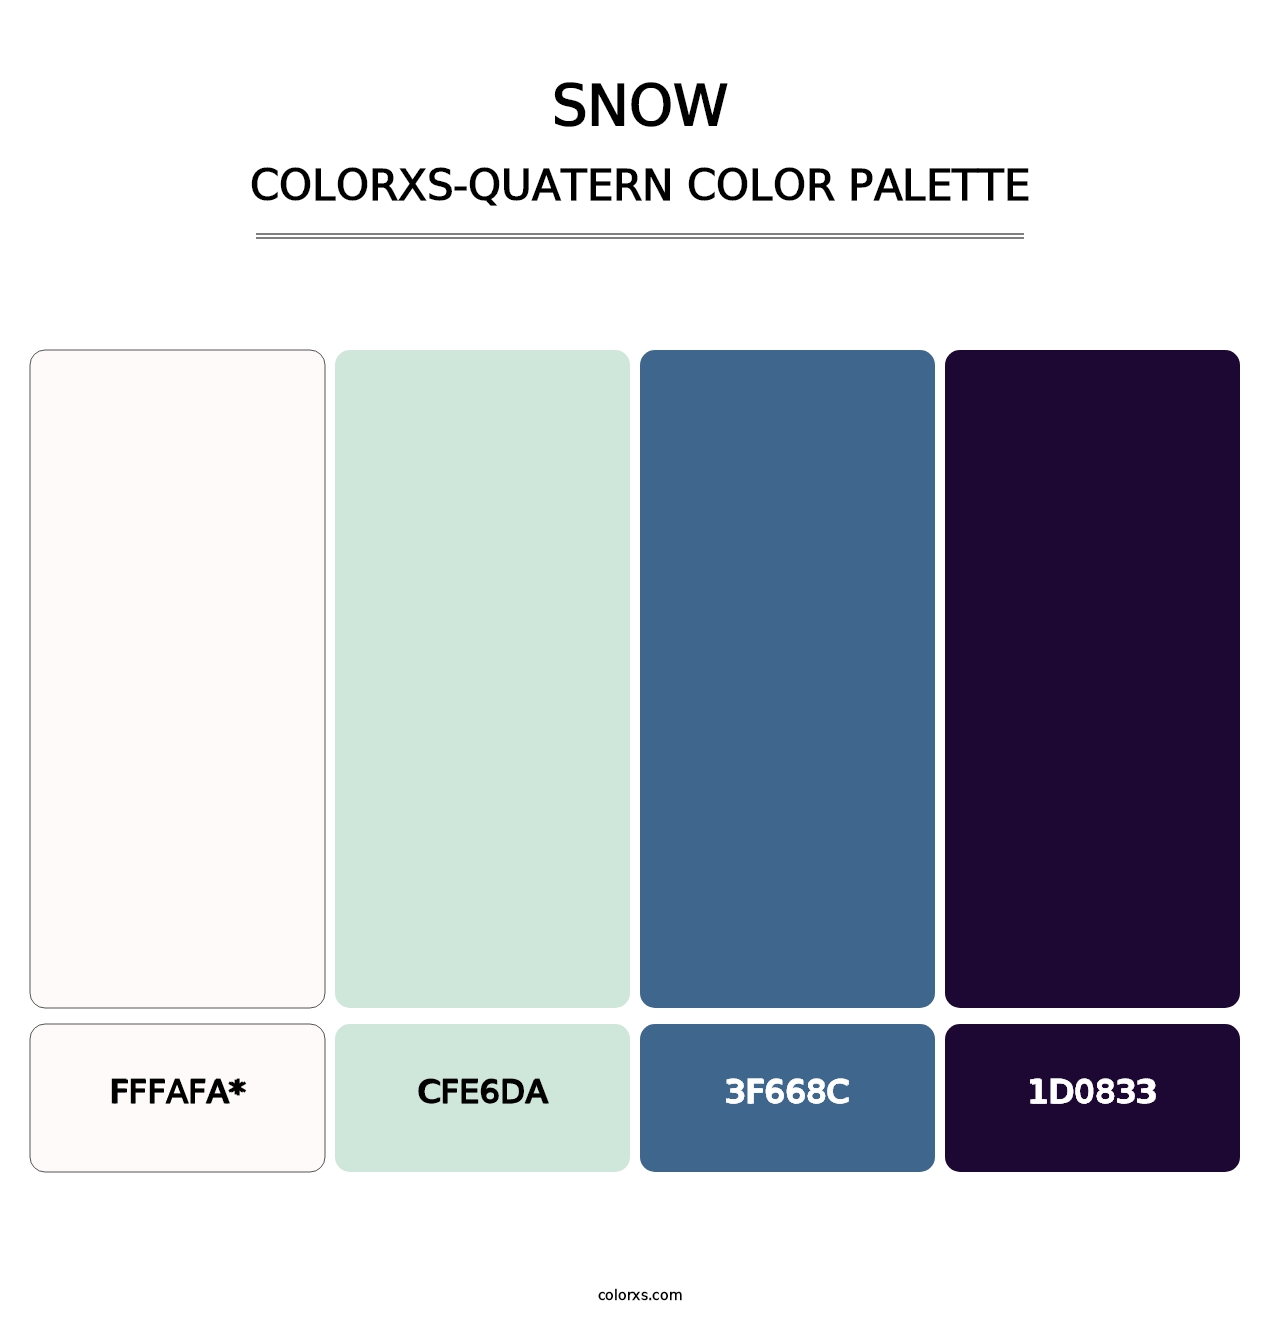 Snow - Colorxs Quatern Palette